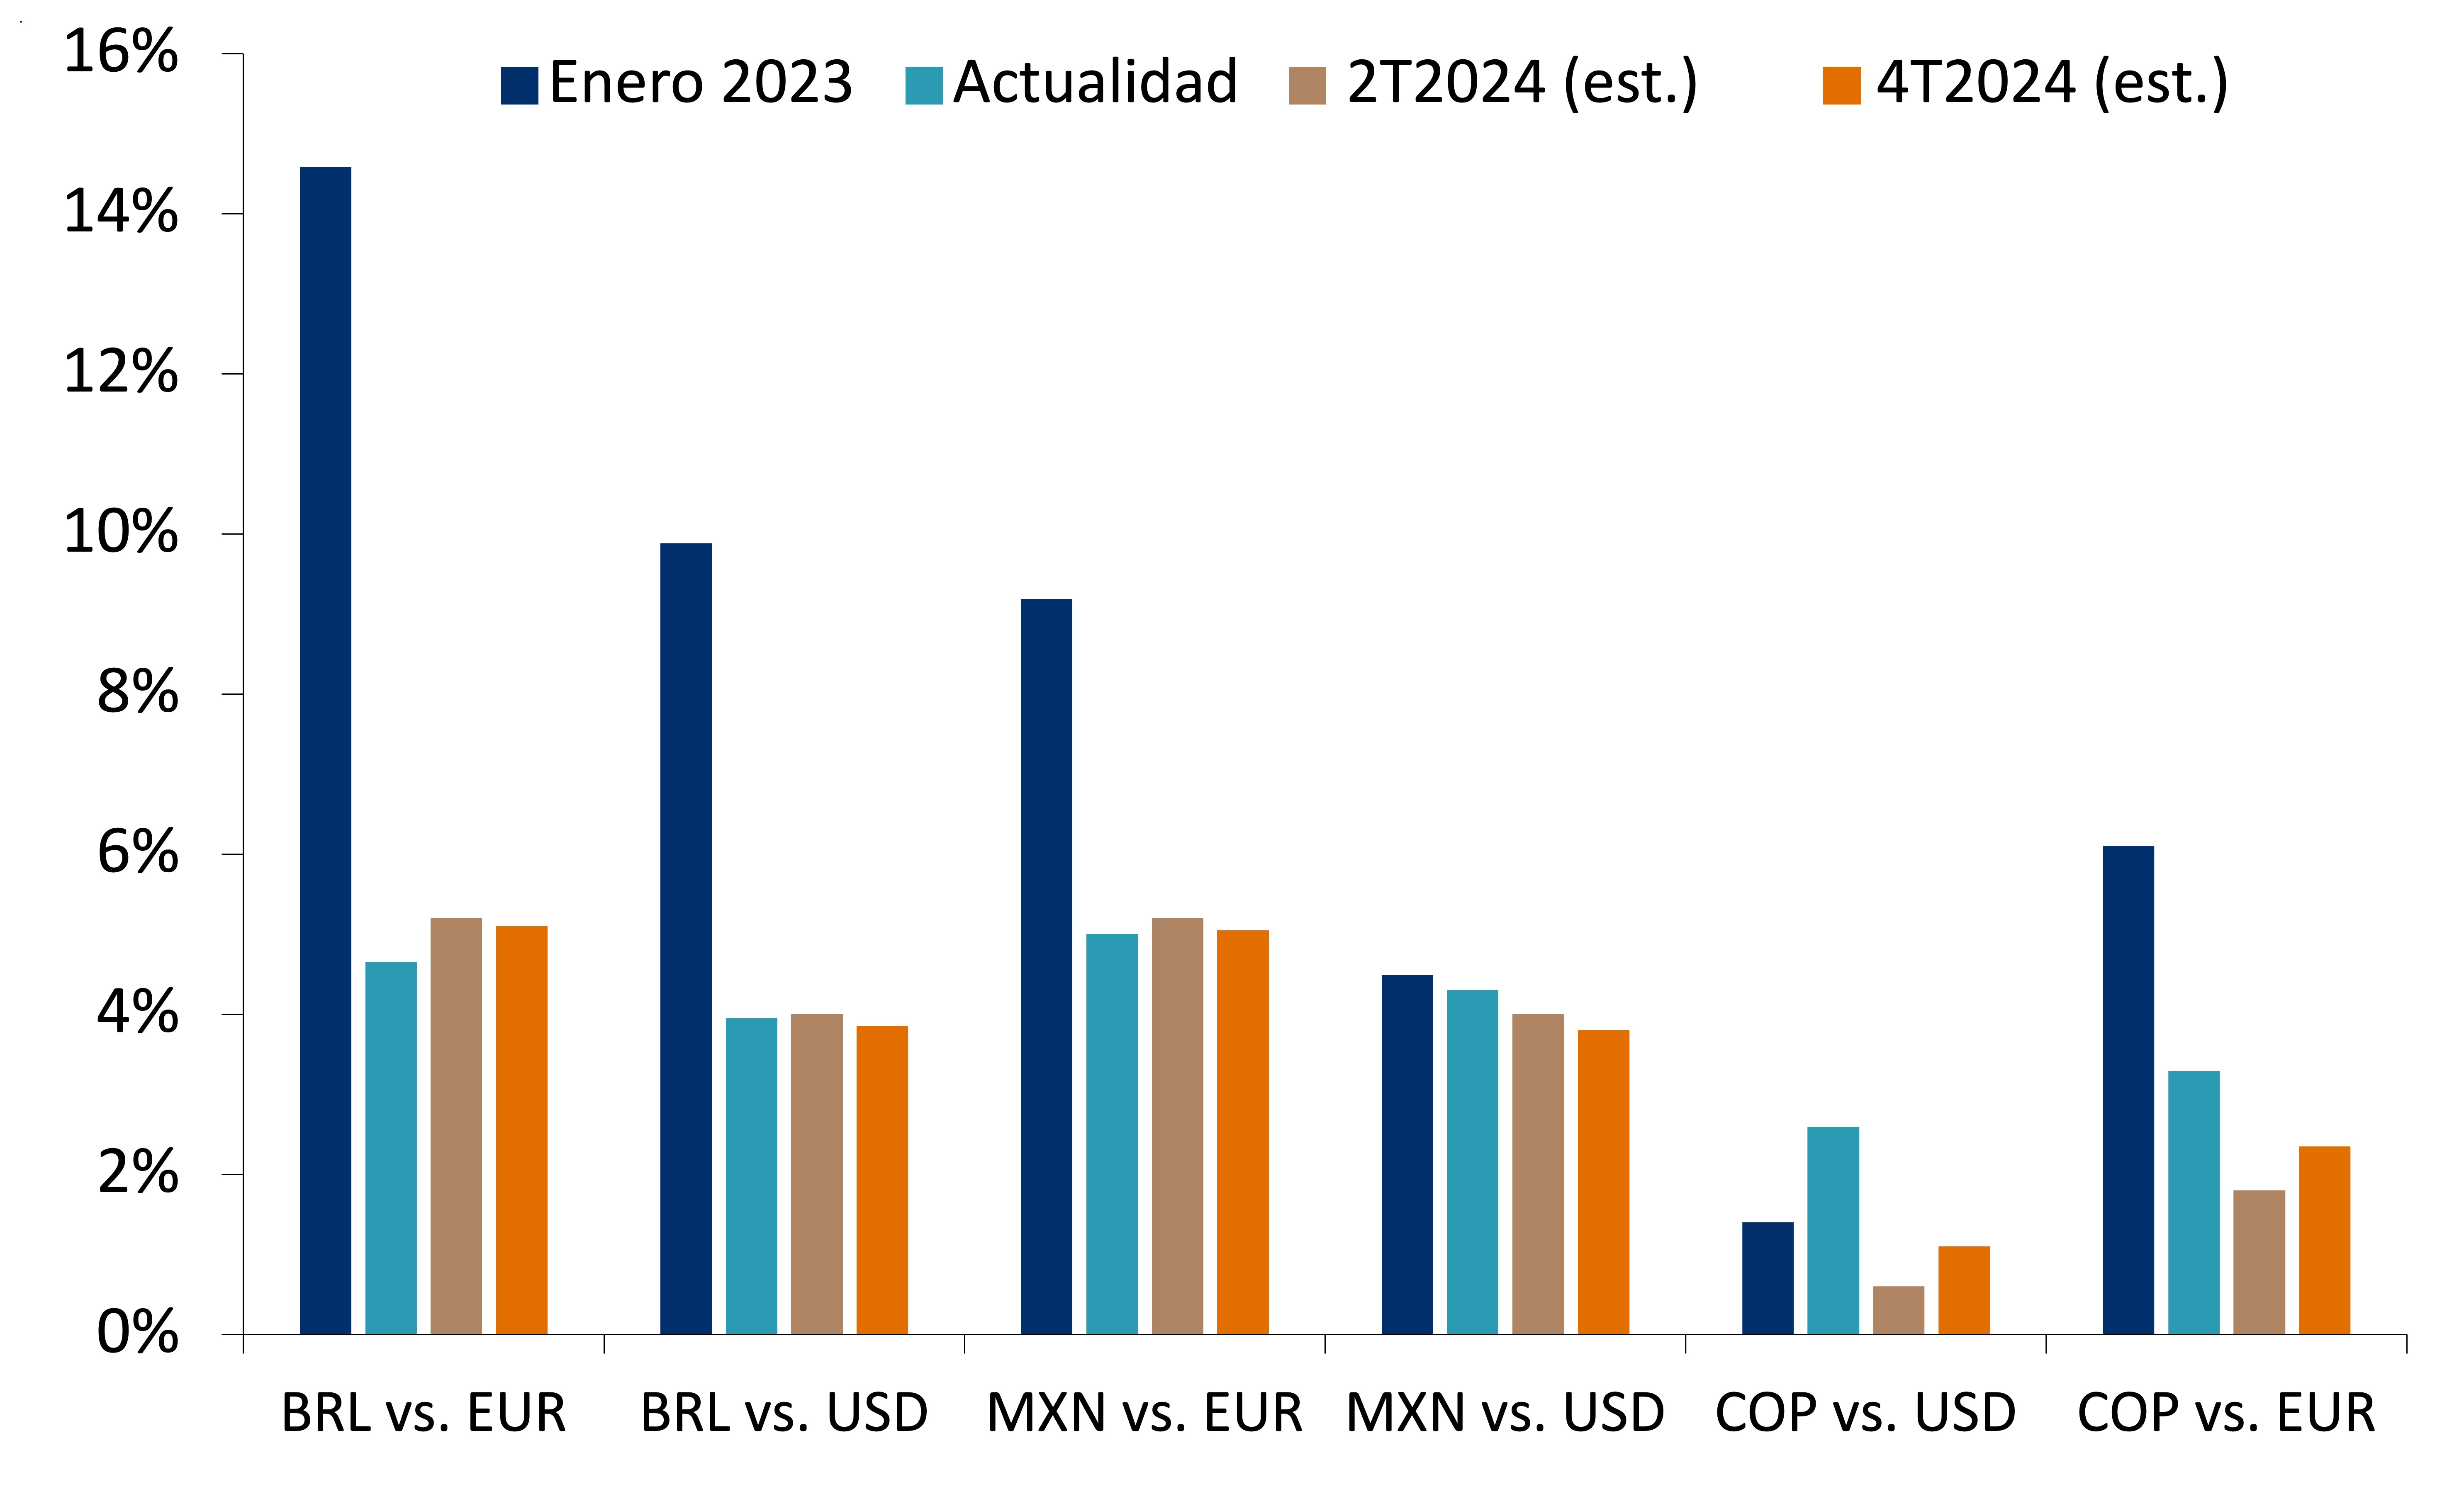 Este gráfico muestra las tasas reales de América Latina frente a las de Estados Unidos en enero de 2023 y la actualidad, así como las estimaciones para el segundo y cuarto trimestre de 2024.